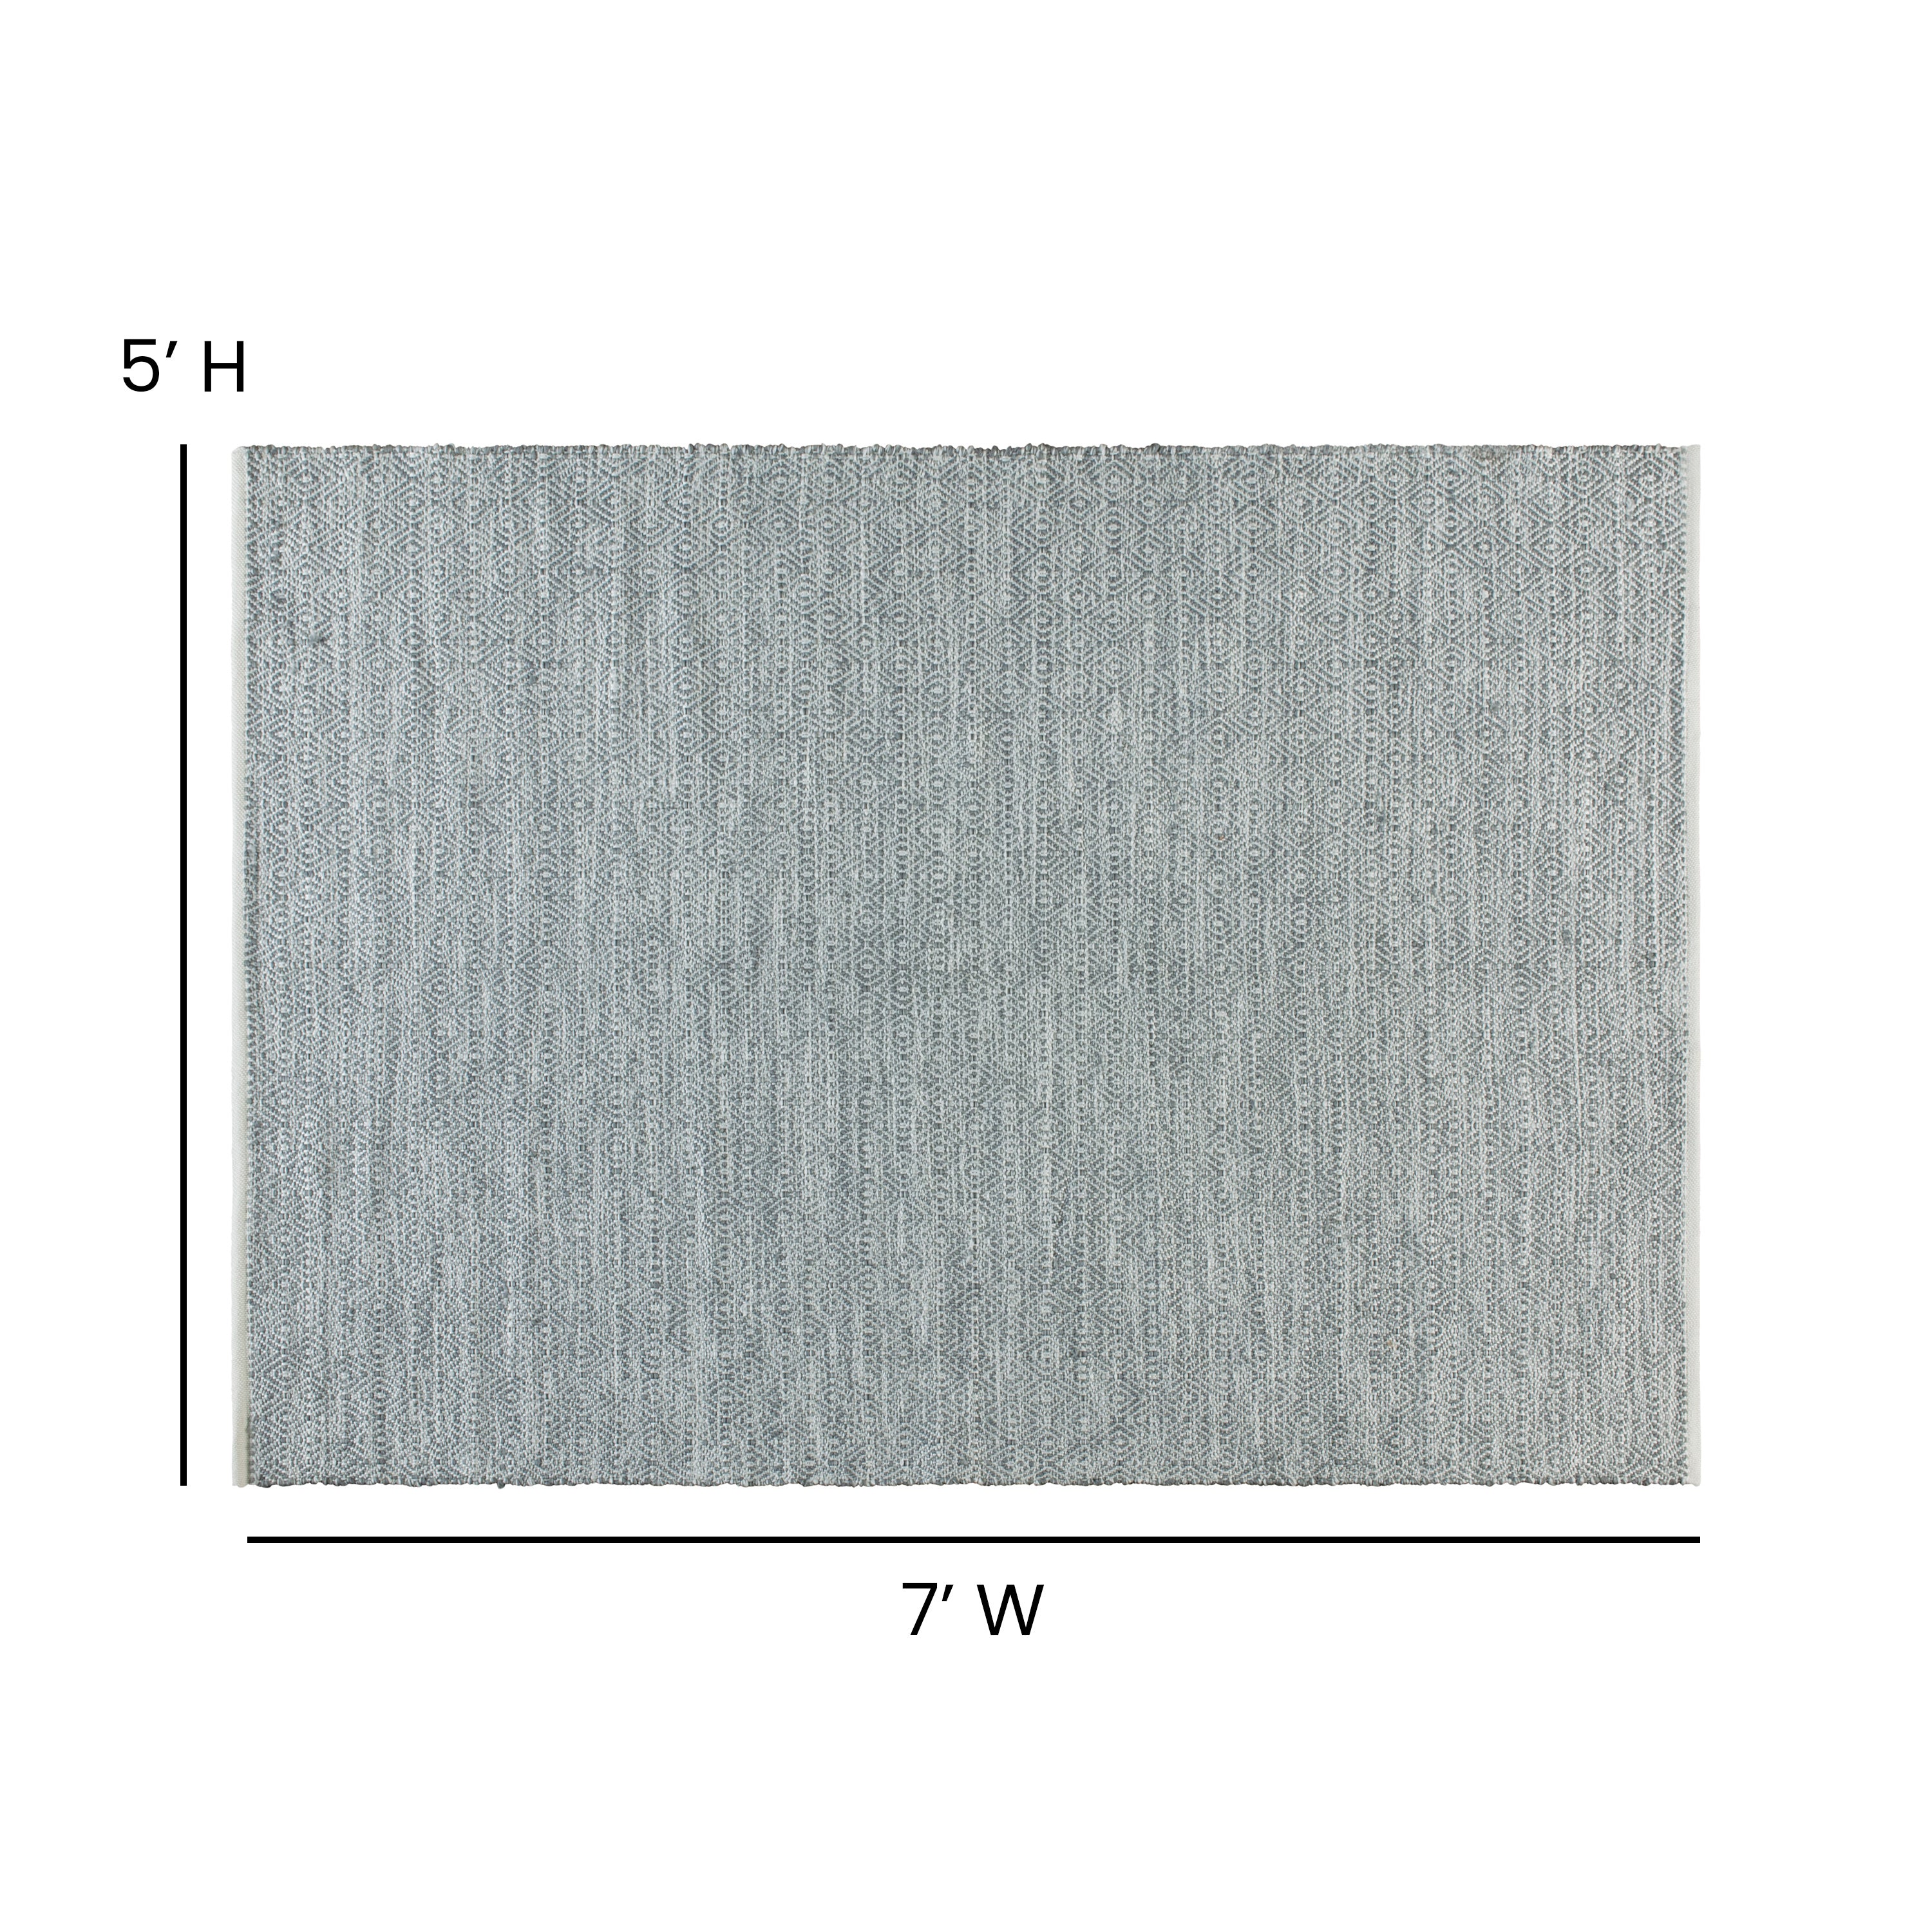 Handwoven Indoor/Outdoor Diamond Pattern Area Rug-Area Rug-Flash Furniture-Wall2Wall Furnishings